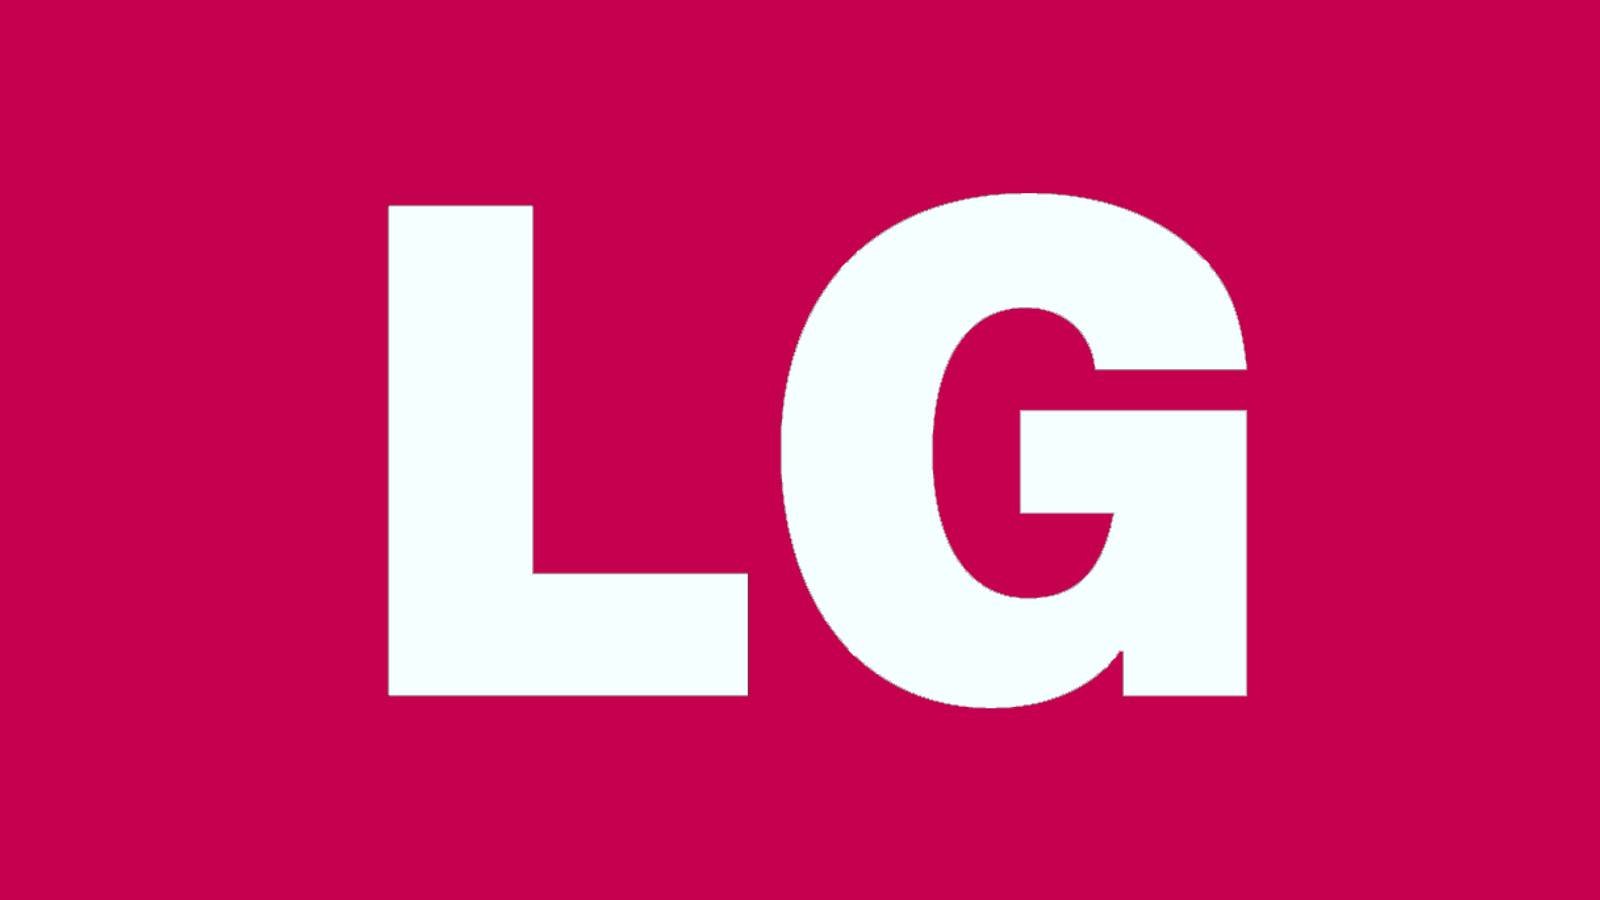 LG lost het ernstige probleem van televisies over de hele wereld op